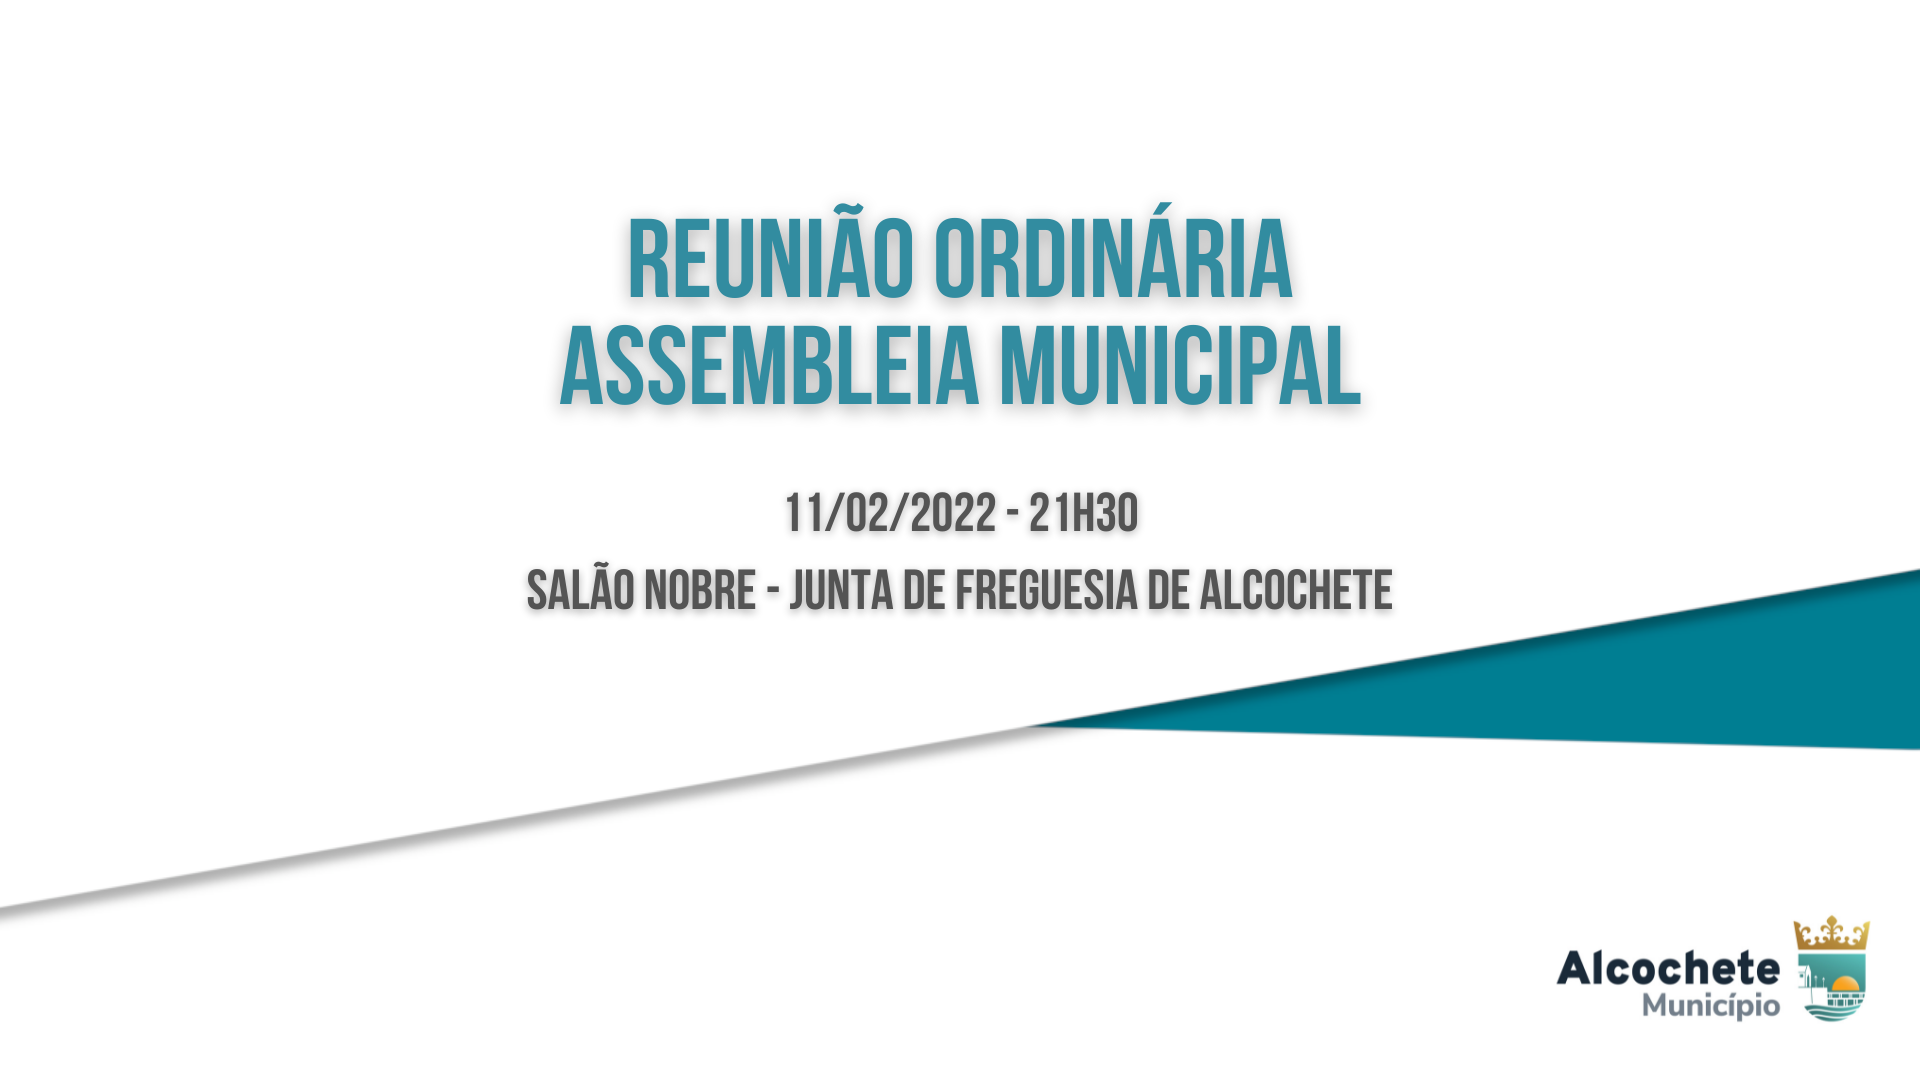 Assembleia Municipal reúne no dia 11 de fevereiro em Alcochete